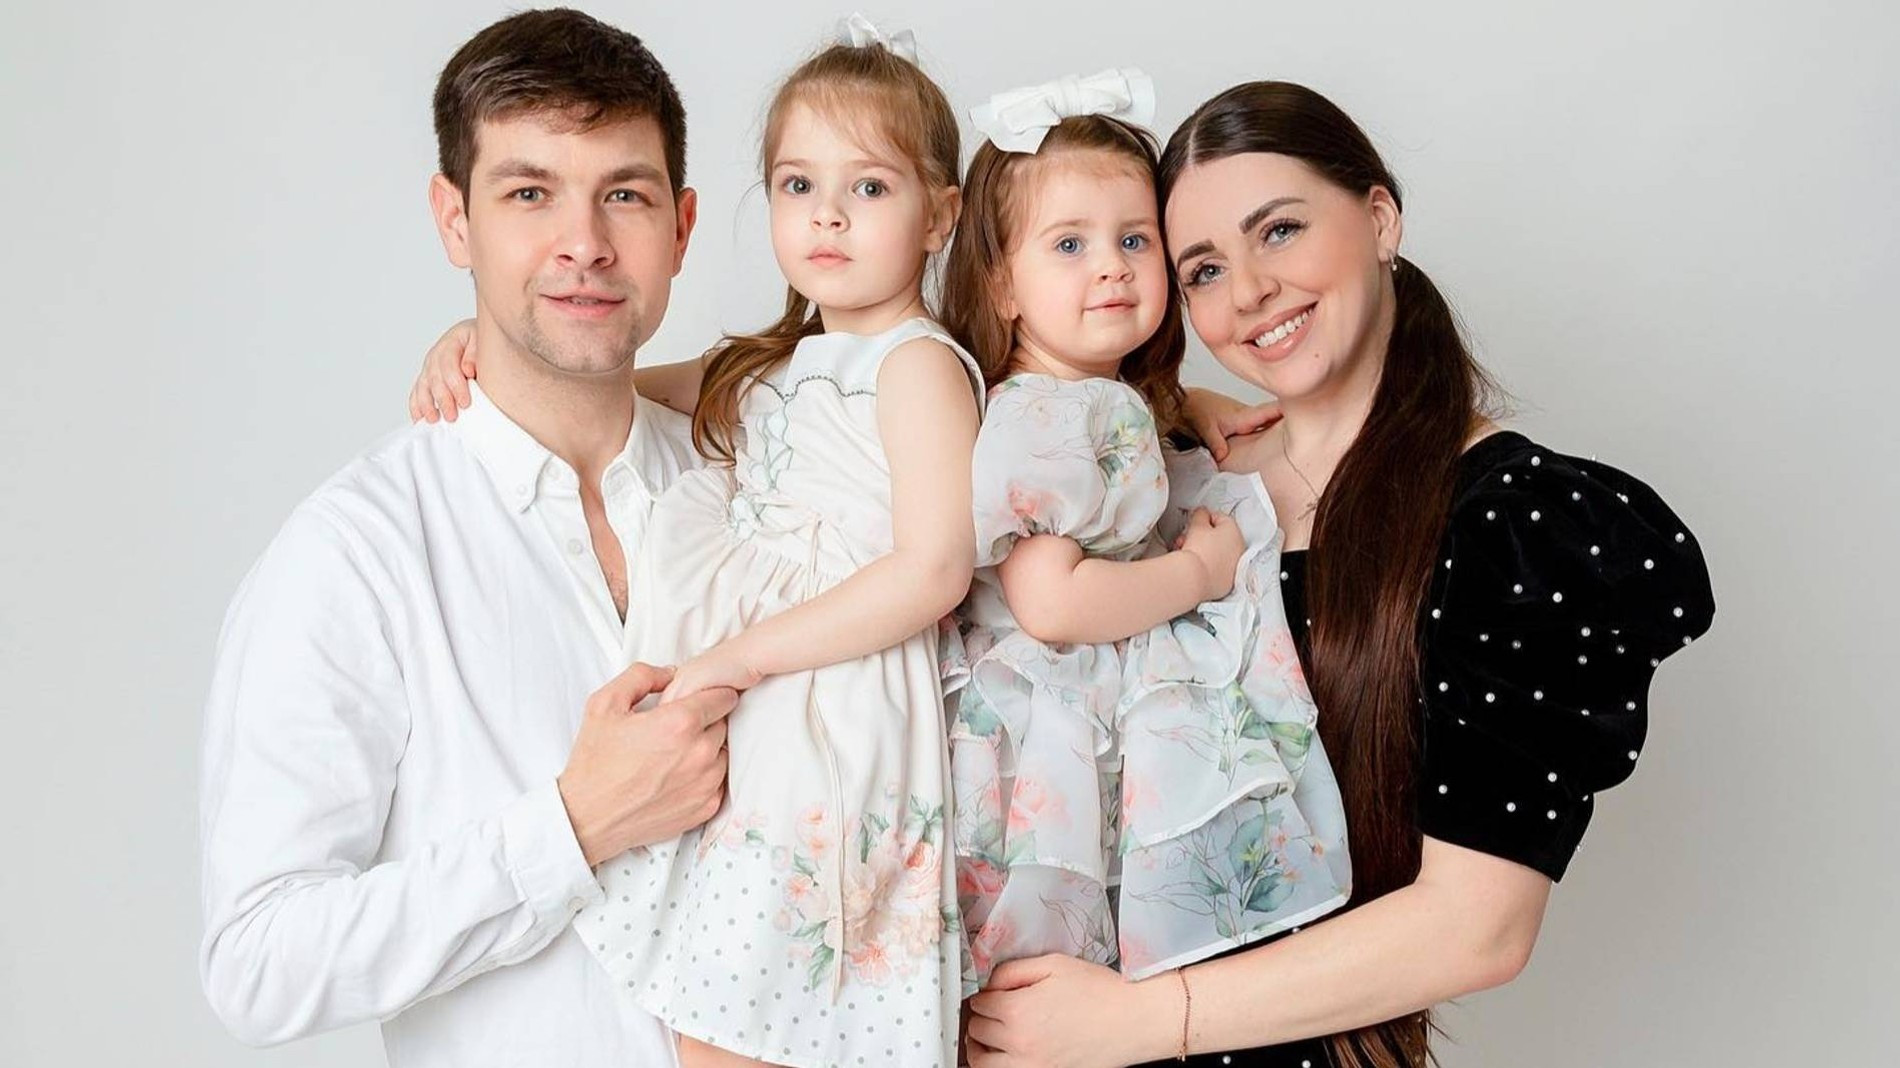 Ольга Рапунцель и Дмитрий Дмитренко с детьми. Фото: Инстаграм* @olyarapunzel